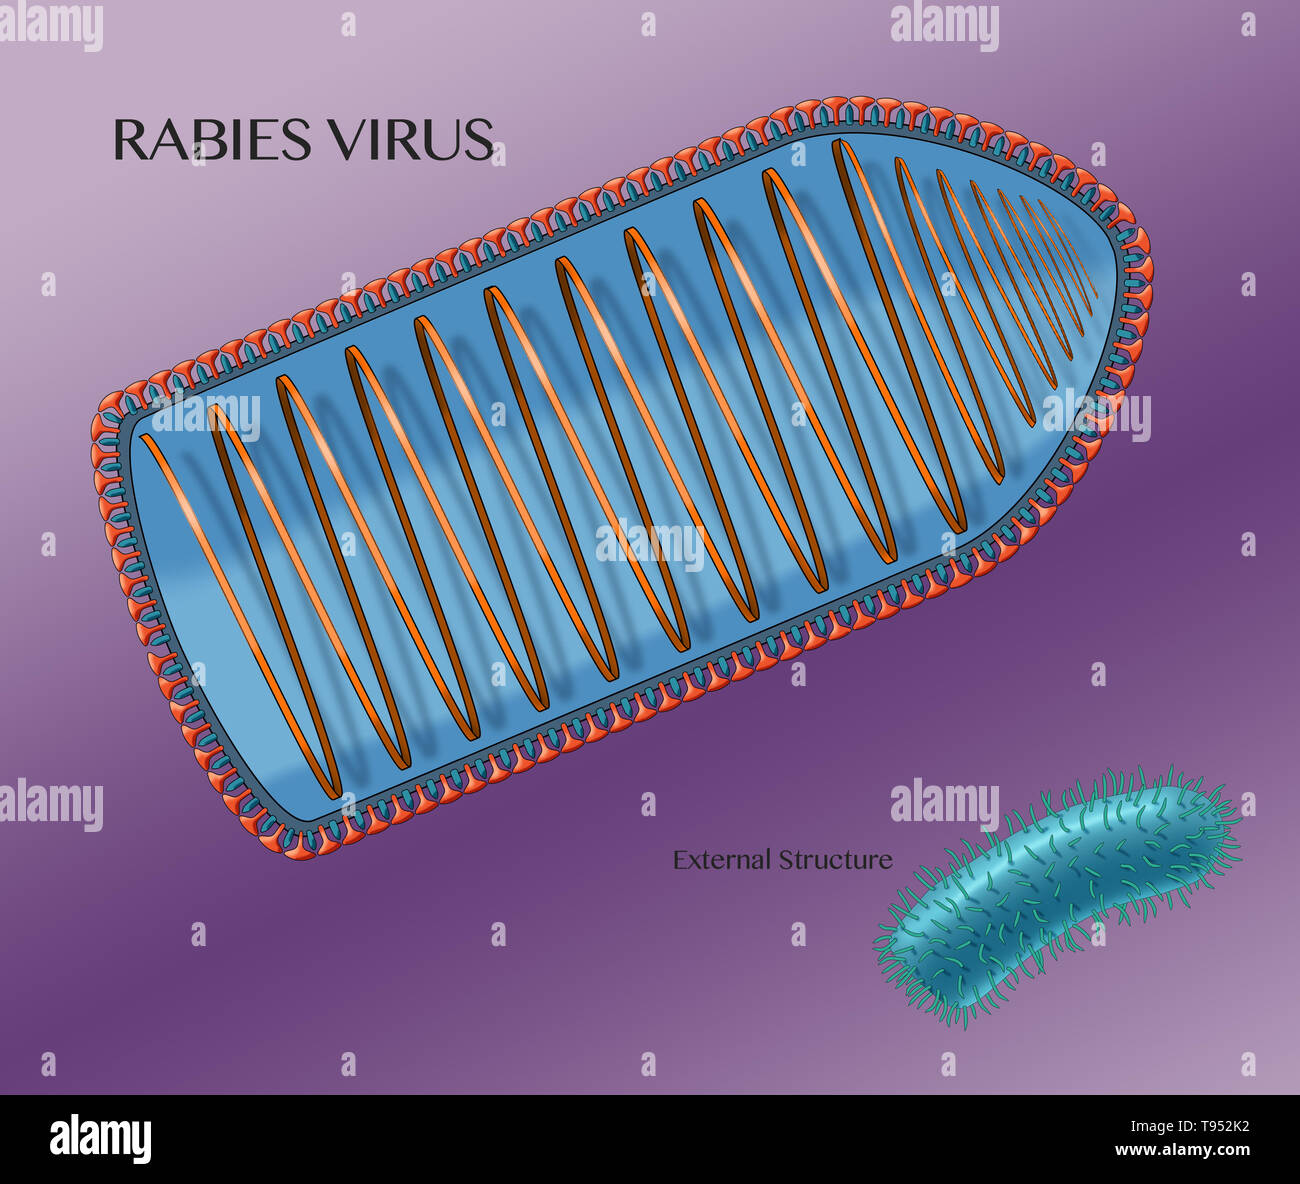 Illustrazione che mostra la struttura interna del virus della rabbia, con la struttura esterna mostrata nell'angolo in basso a destra. Il virus della rabbia è un virus neurotropici che provoca la rabbia negli esseri umani e negli animali. Il virus della rabbia ha una morfologia cilindrica ed è il tipo di specie del genere Lyssavirus della famiglia Rhabdoviridae. Foto Stock